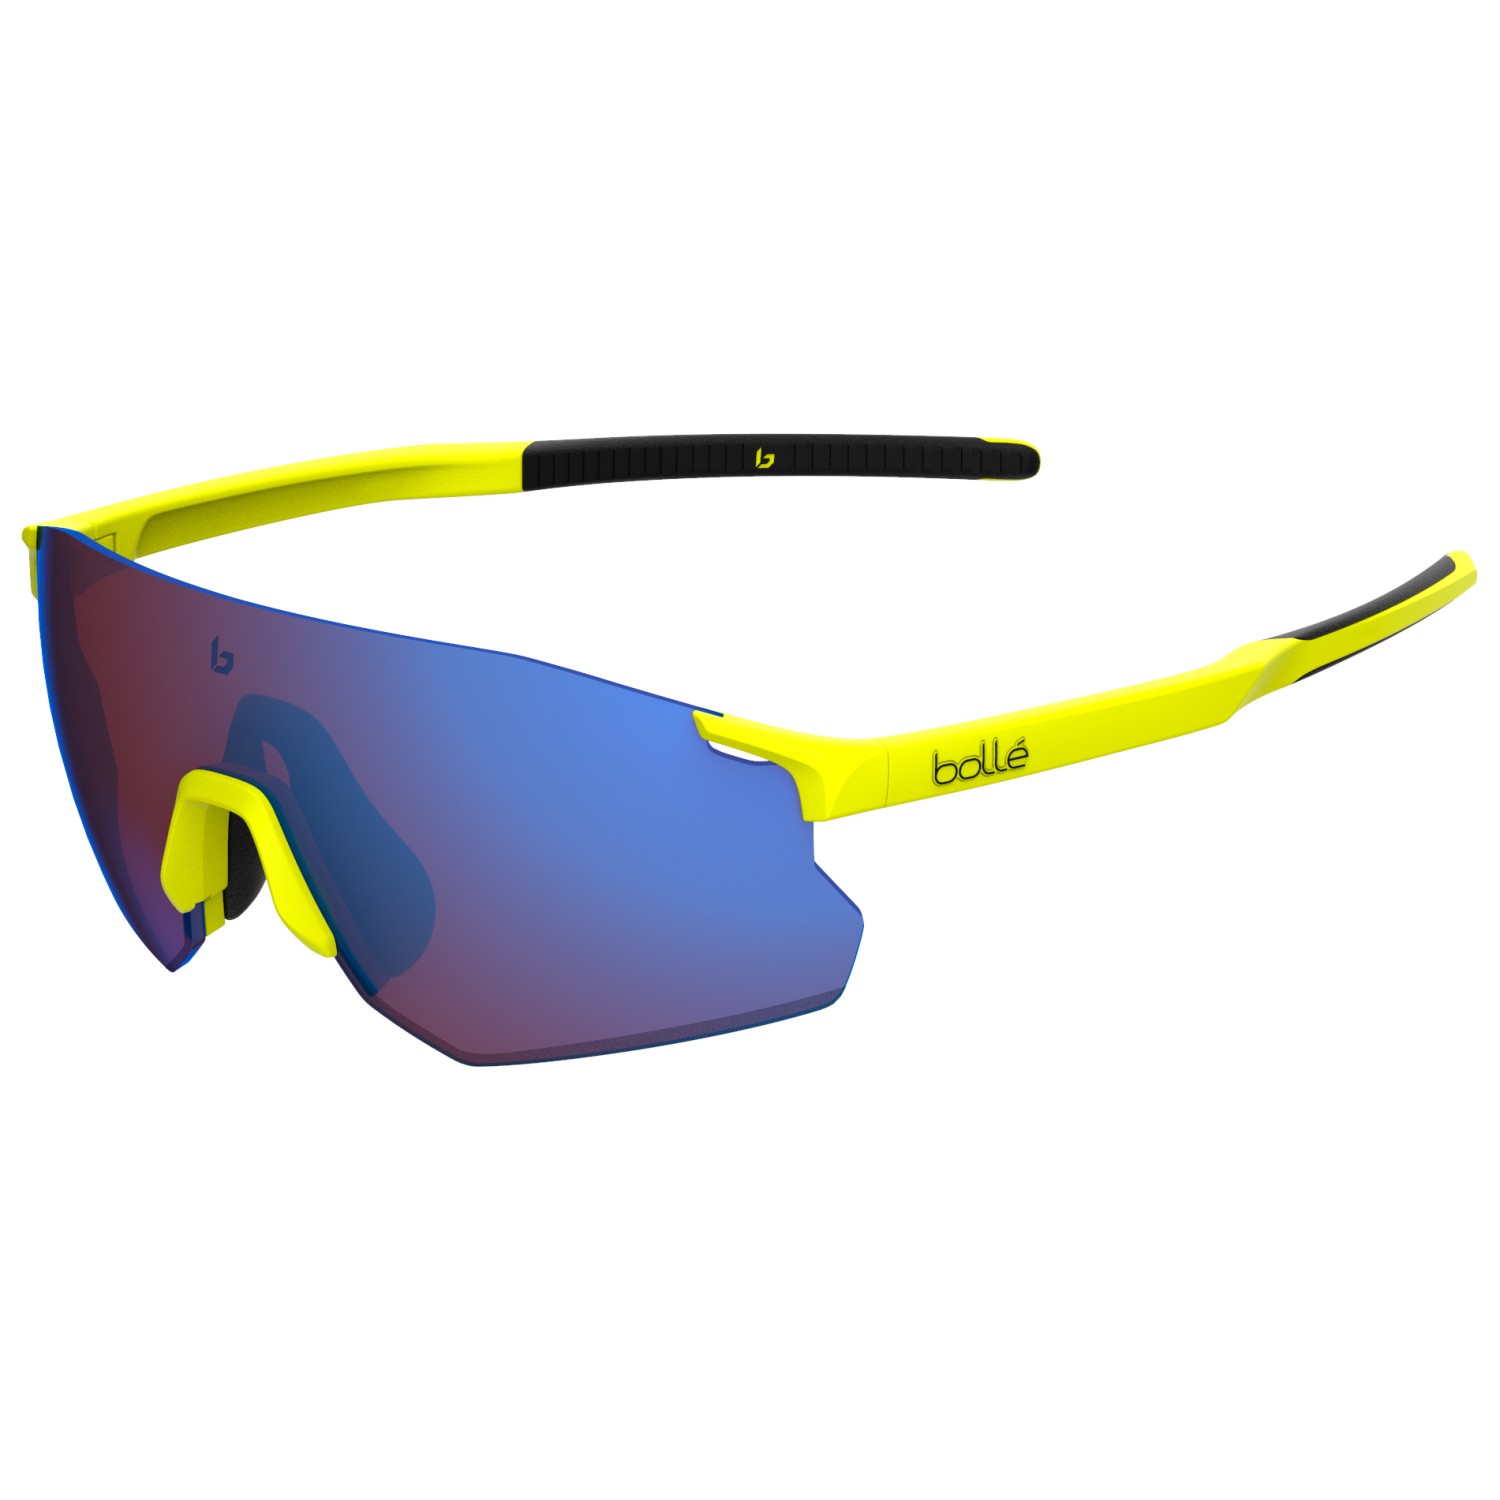 Велосипедные очки Bollé Icarus Cat 3 VLT 15%, цвет Acid Yellow Matte велосипедные очки shimano equinox 3 цвет оправы черный